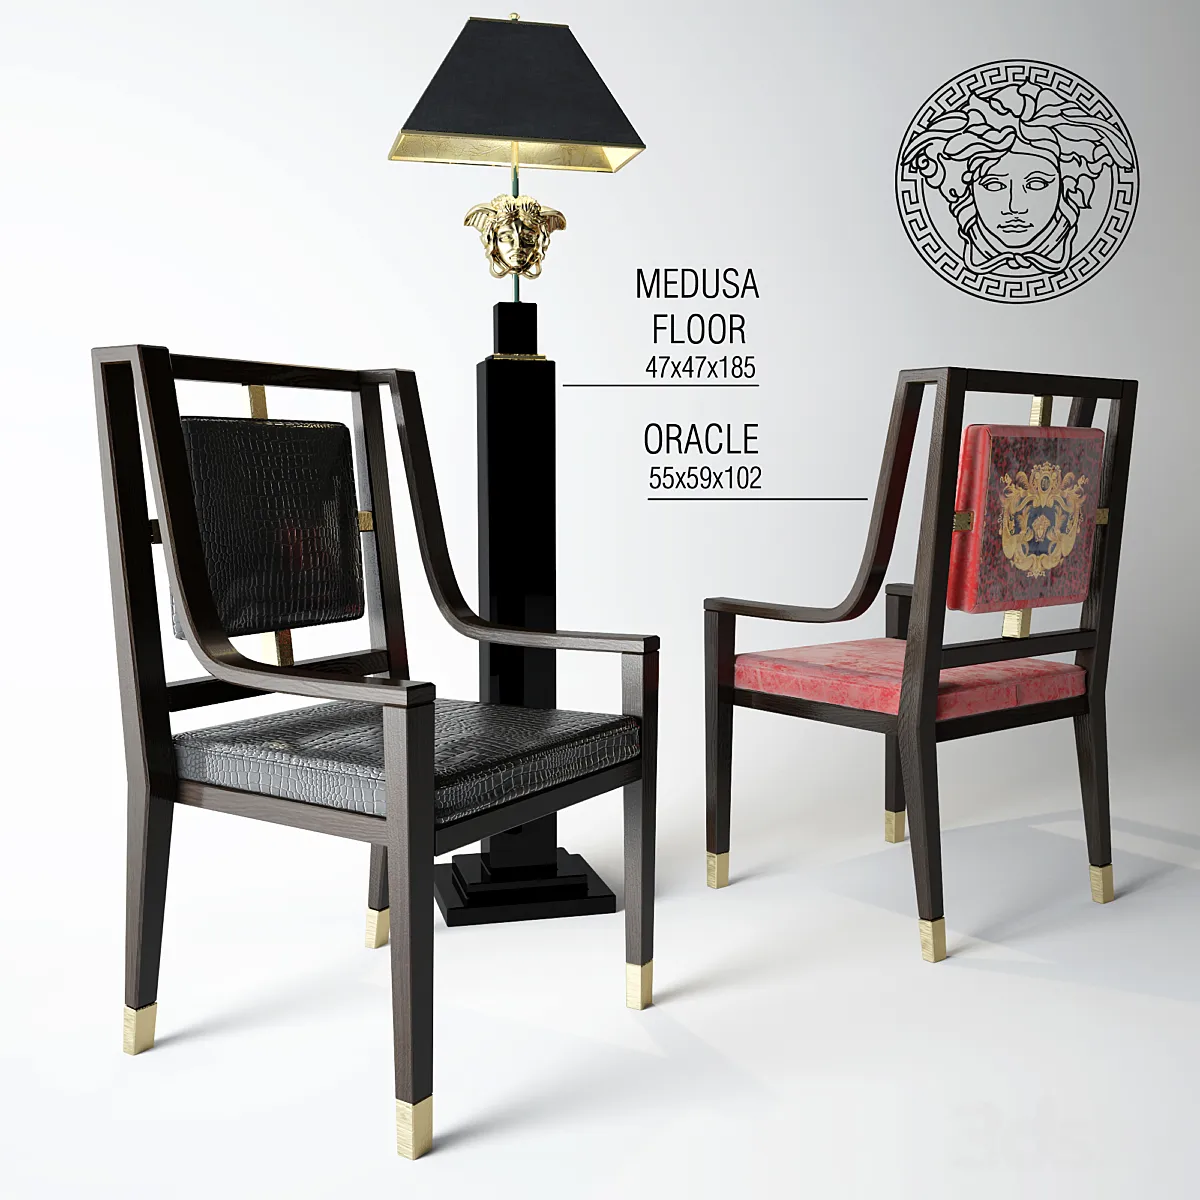 3dsky - versace- oracle + medusa - Chair - 3D model